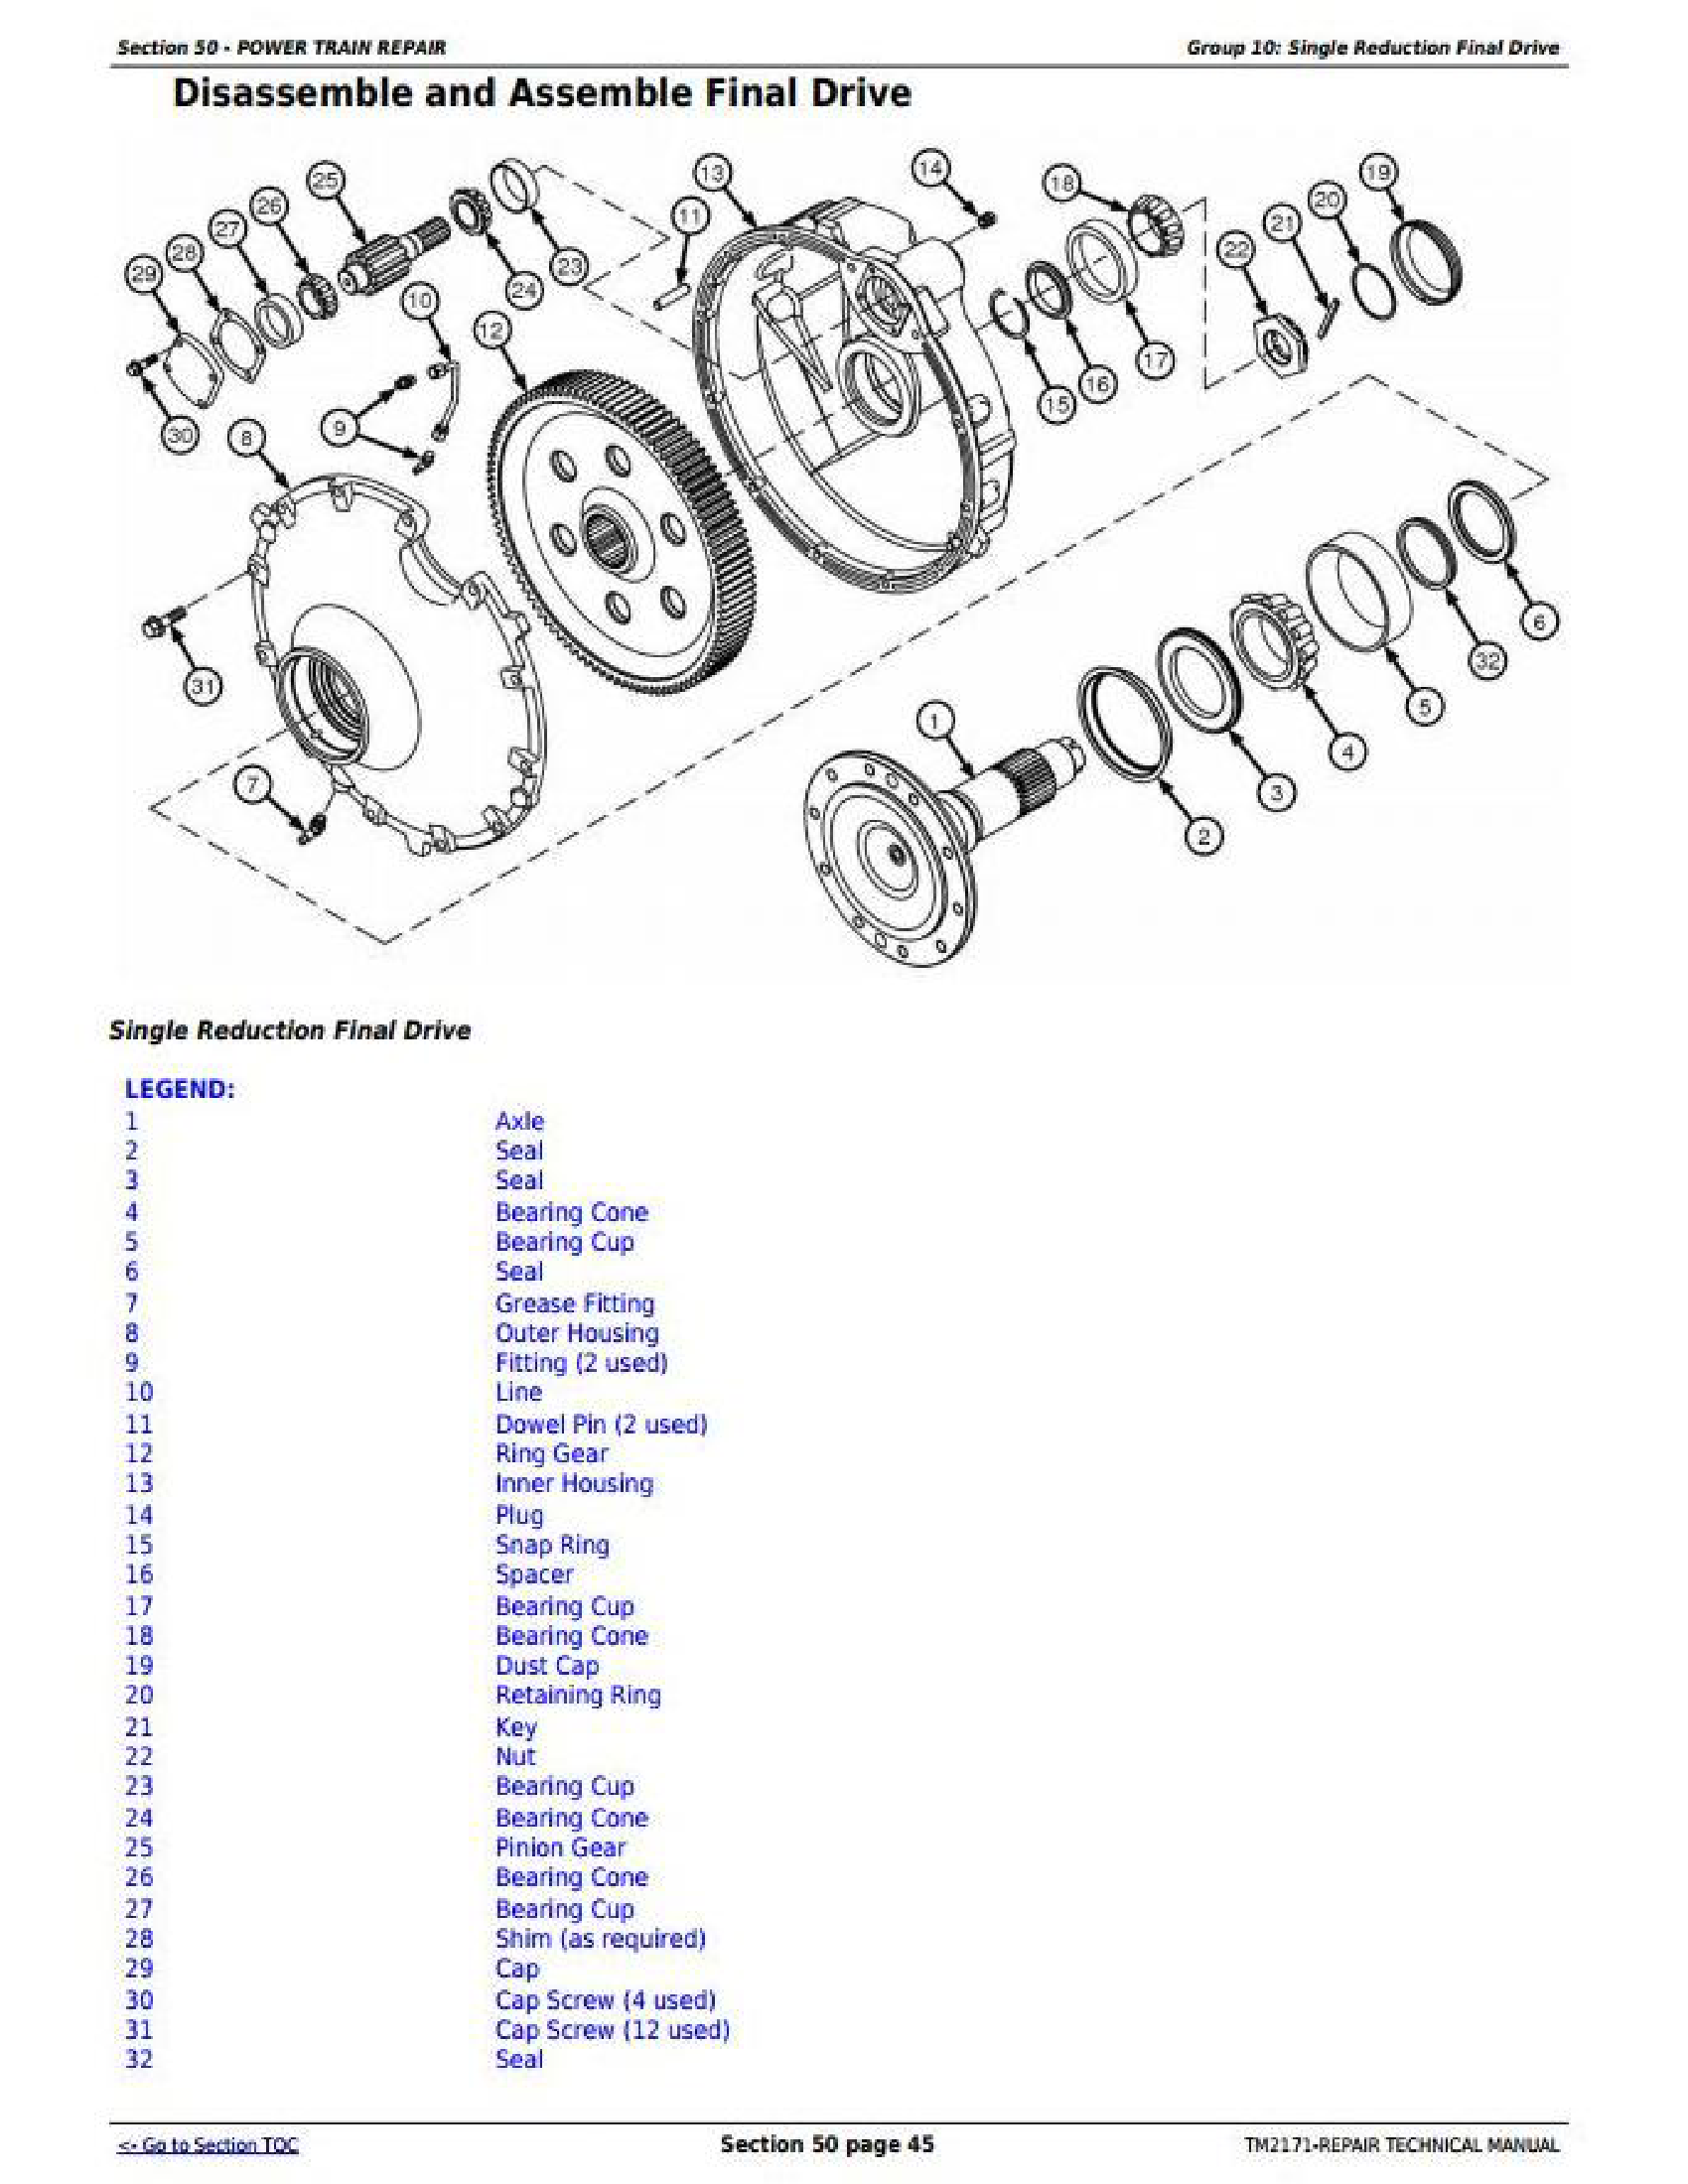 John Deere 326E manual pdf